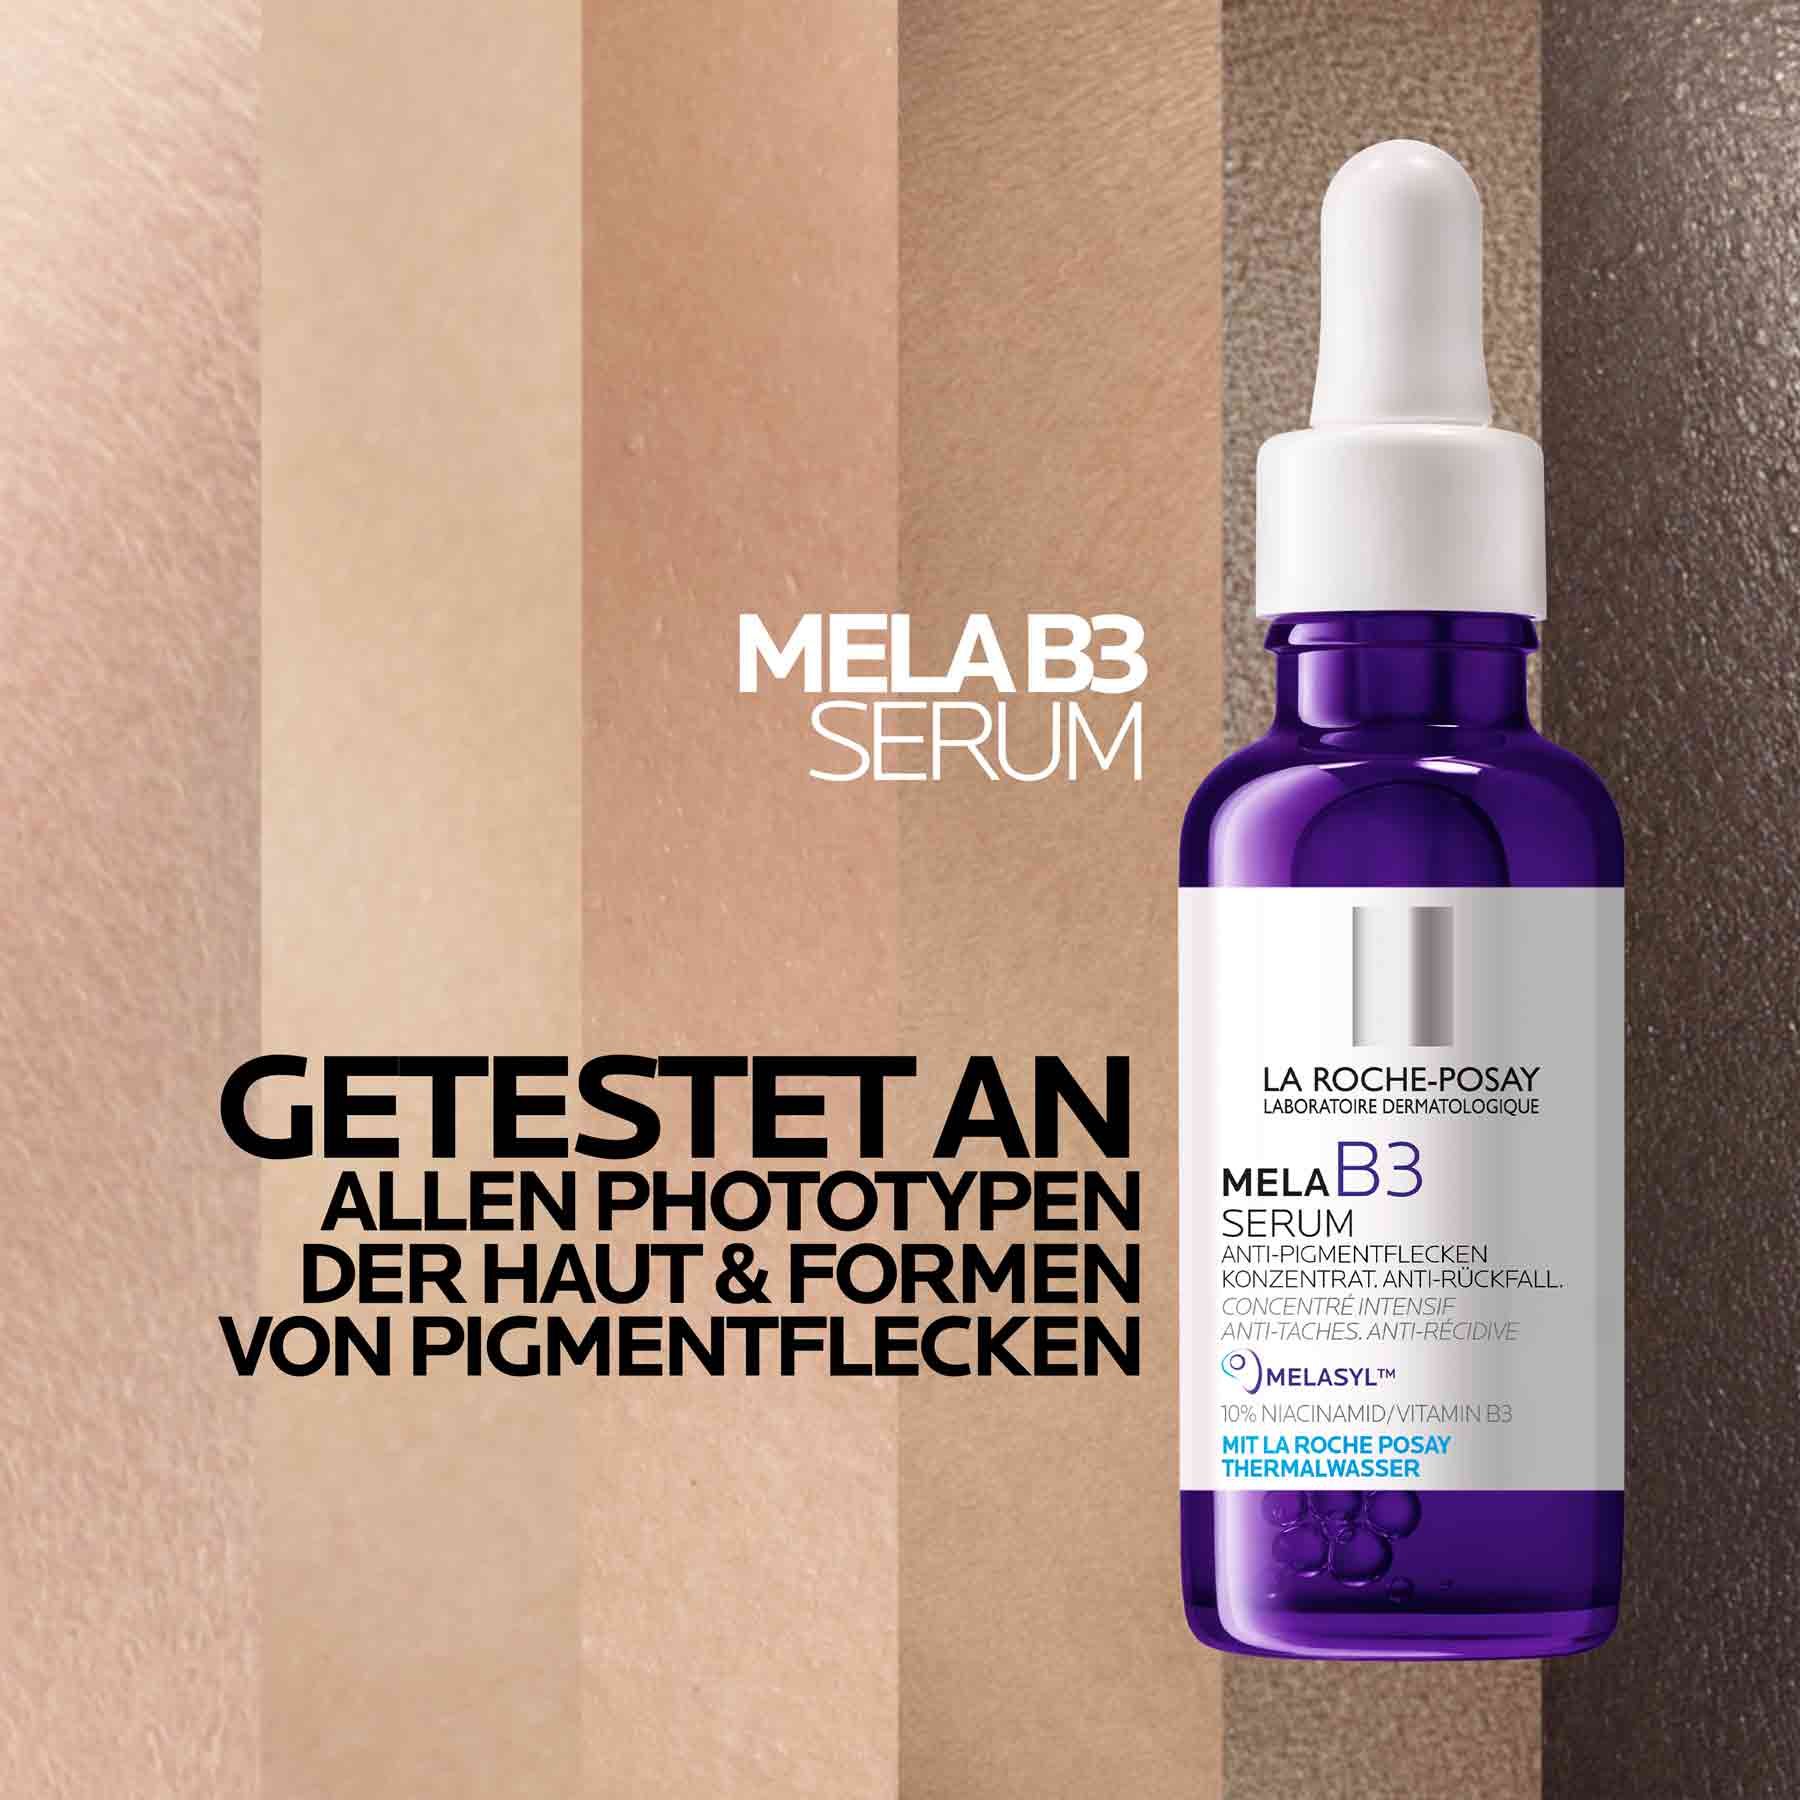 MELA B3 Serum gegen Pigmentflecken – getestet an allen Phototypen der Haut